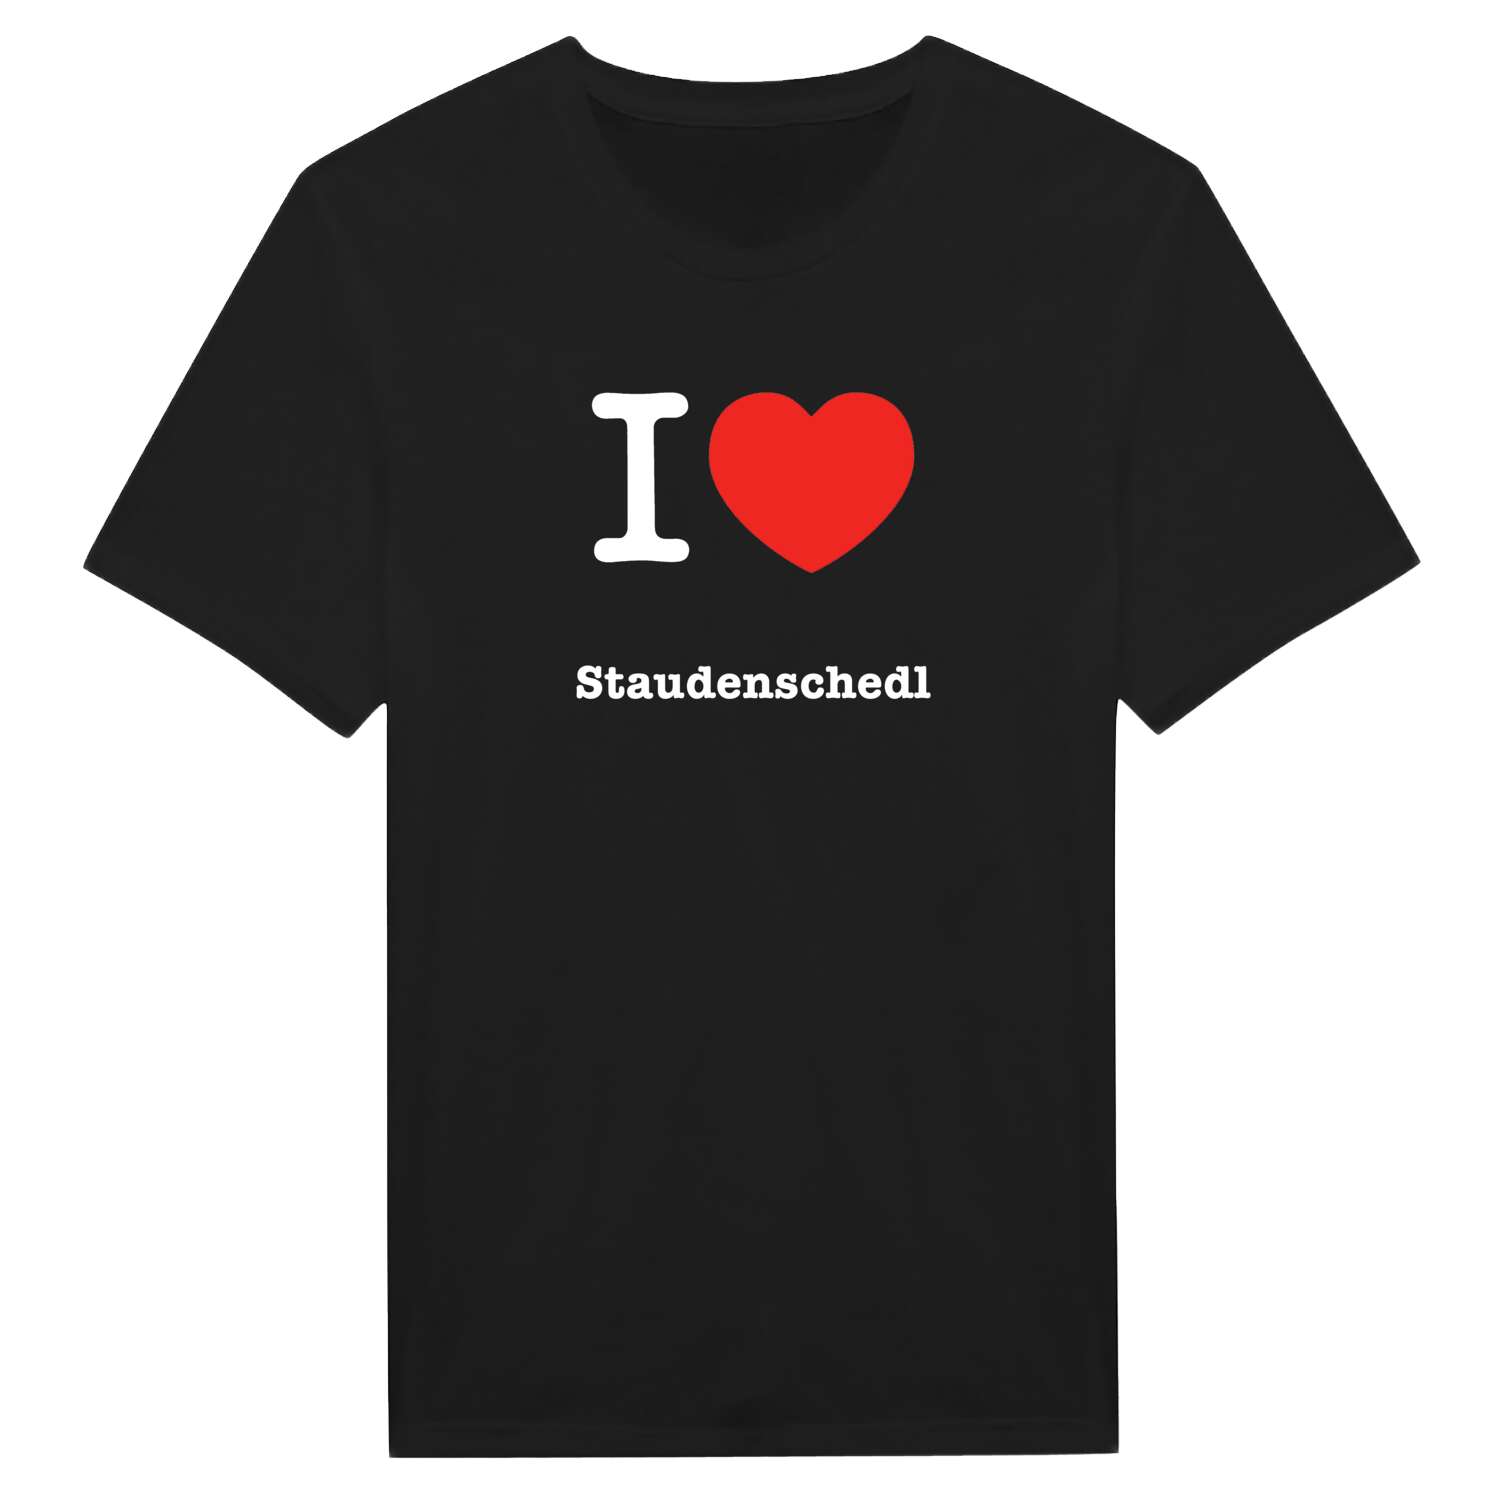 Staudenschedl T-Shirt »I love«